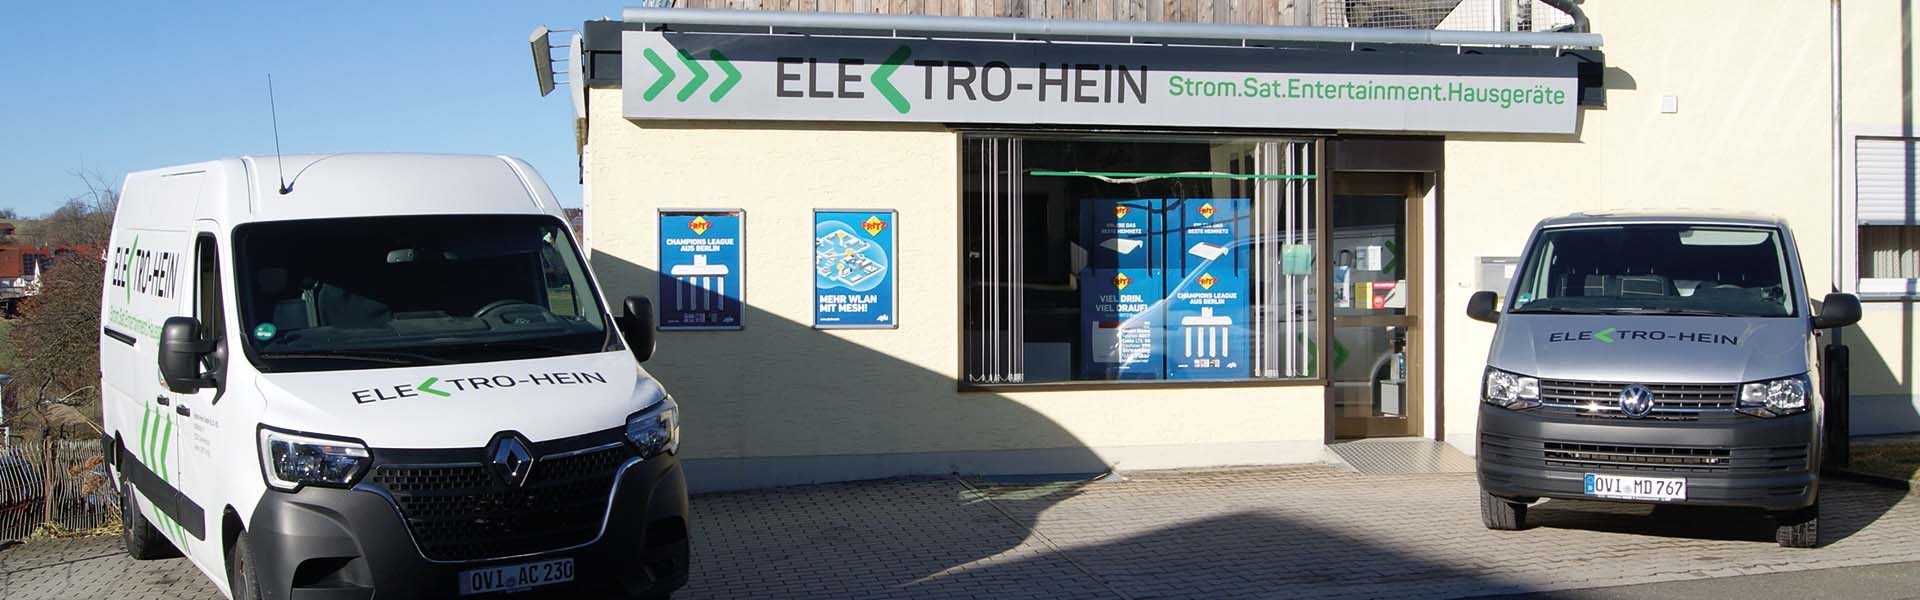 Elektro-Hein GmbH & Co. KG in Oberviechtach